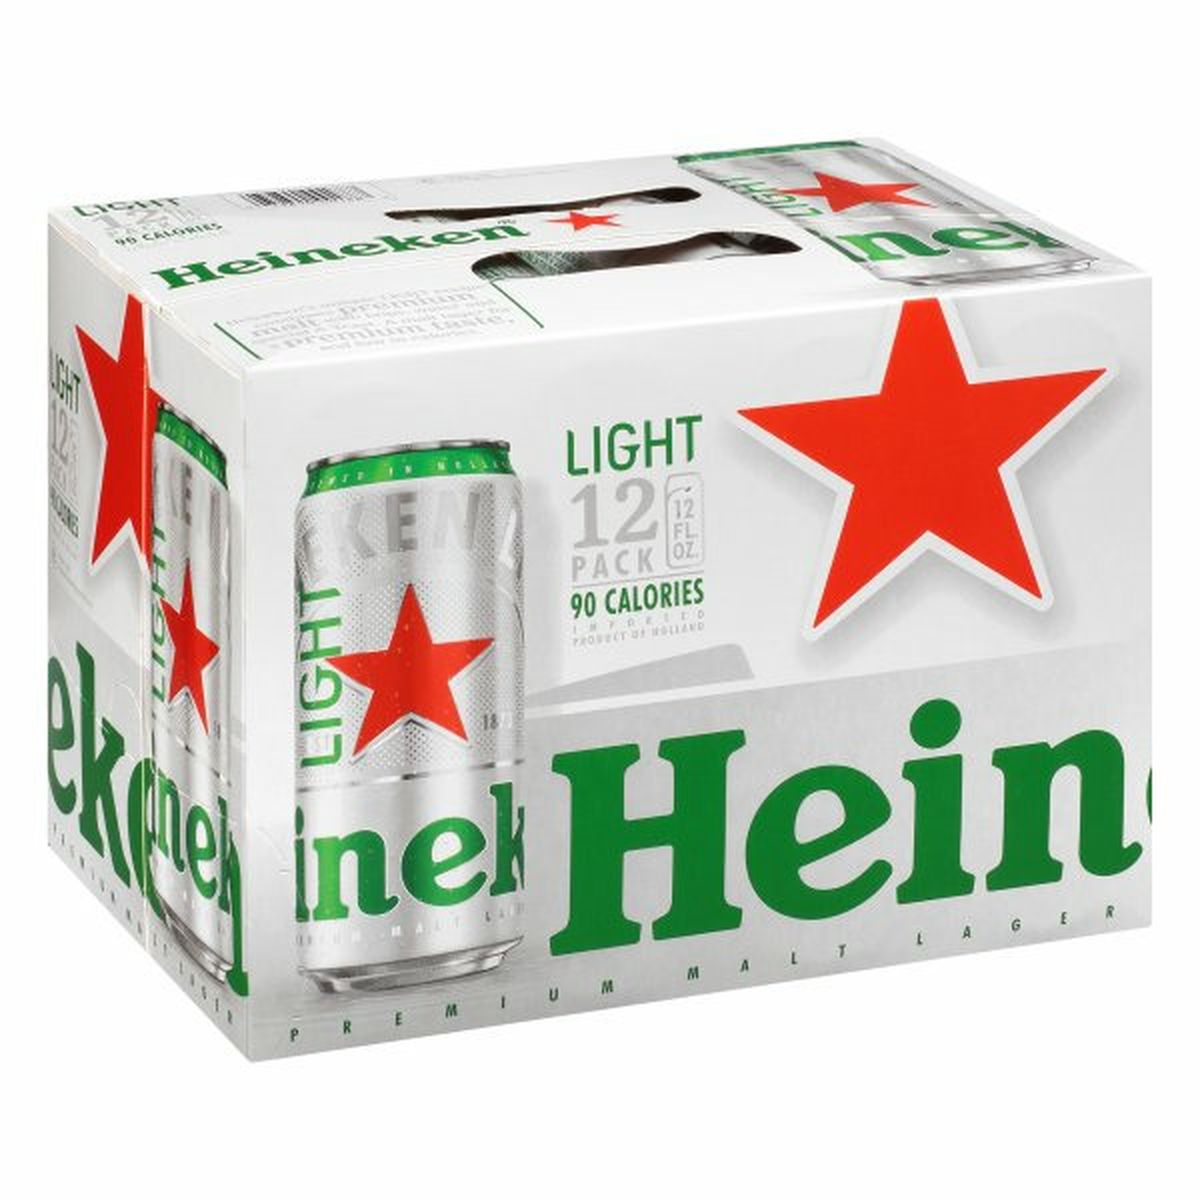 Calories in Heineken Premium Light Beer Fridgepack  12/12 oz cans